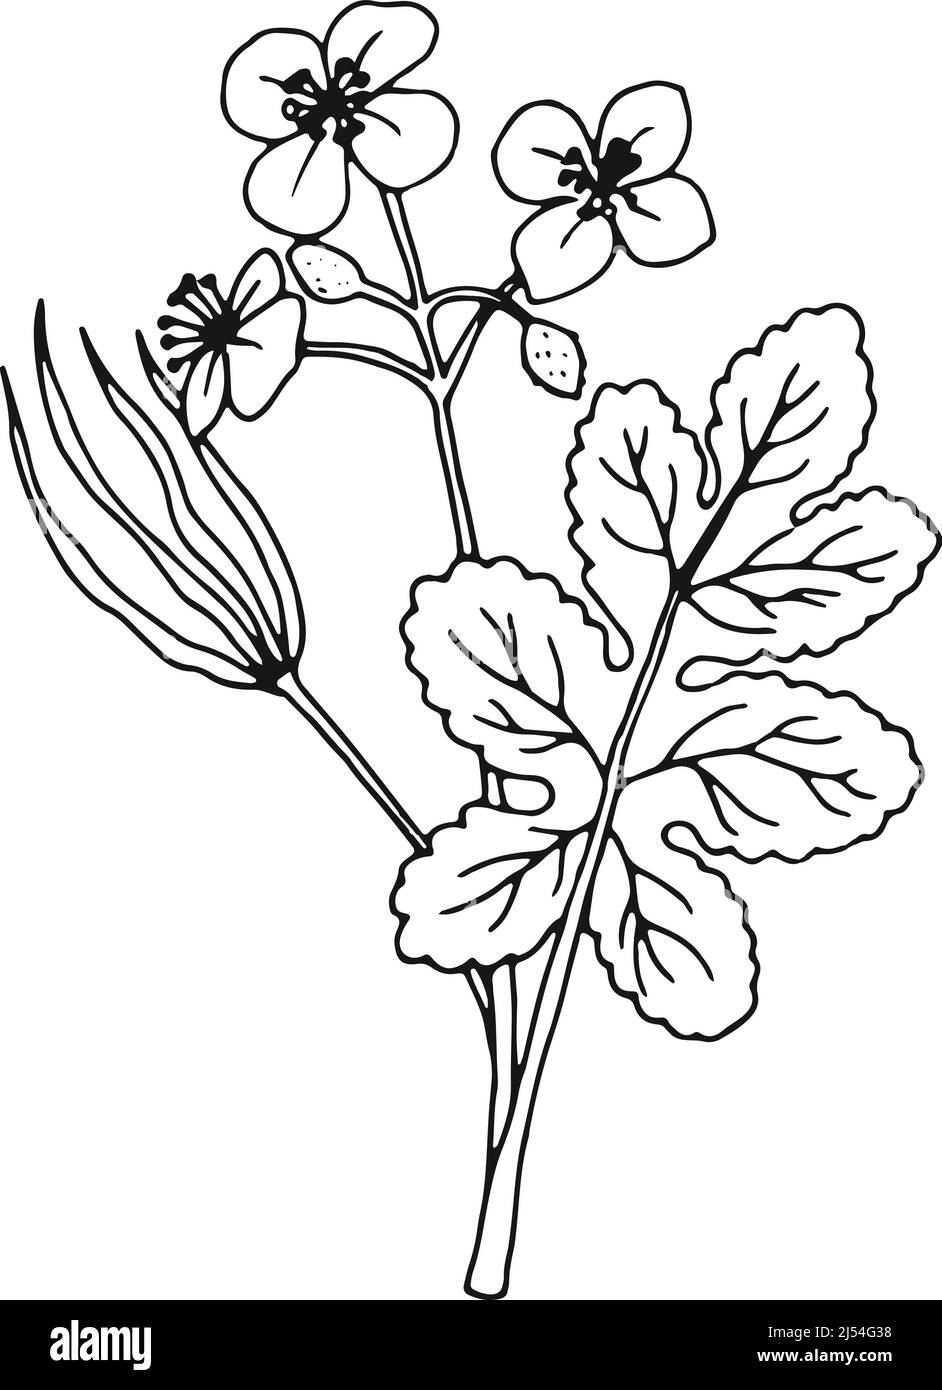 Chelidonium dessin d'herbes médicales. Celandines illustration botanique Illustration de Vecteur